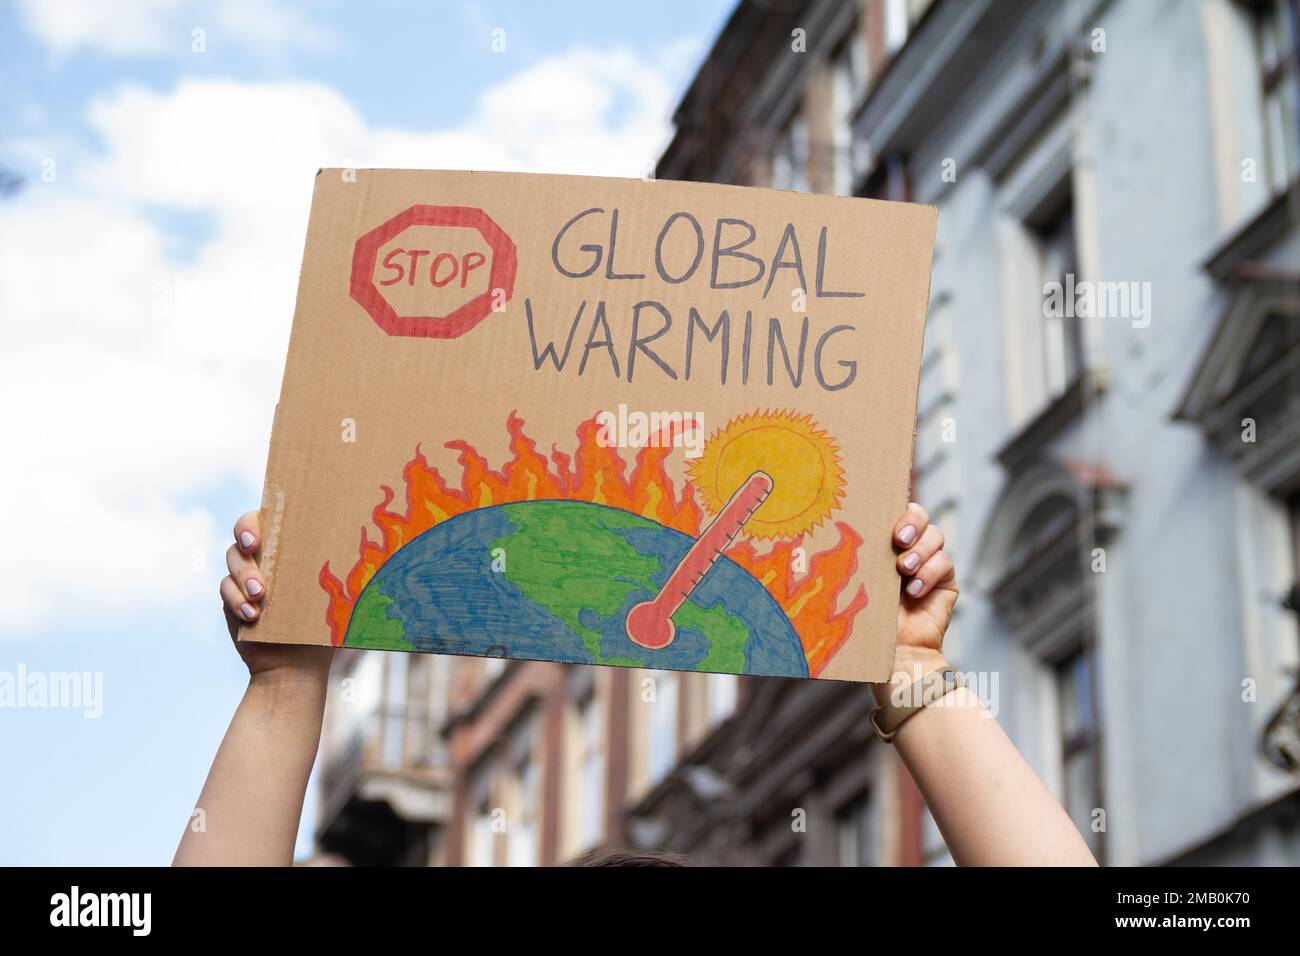 Un manifestant tient un signe avec le slogan Stop Global Warming. Femme avec plaque à la manifestation de rassemblement de protestation, grève contre le changement climatique. Banque D'Images